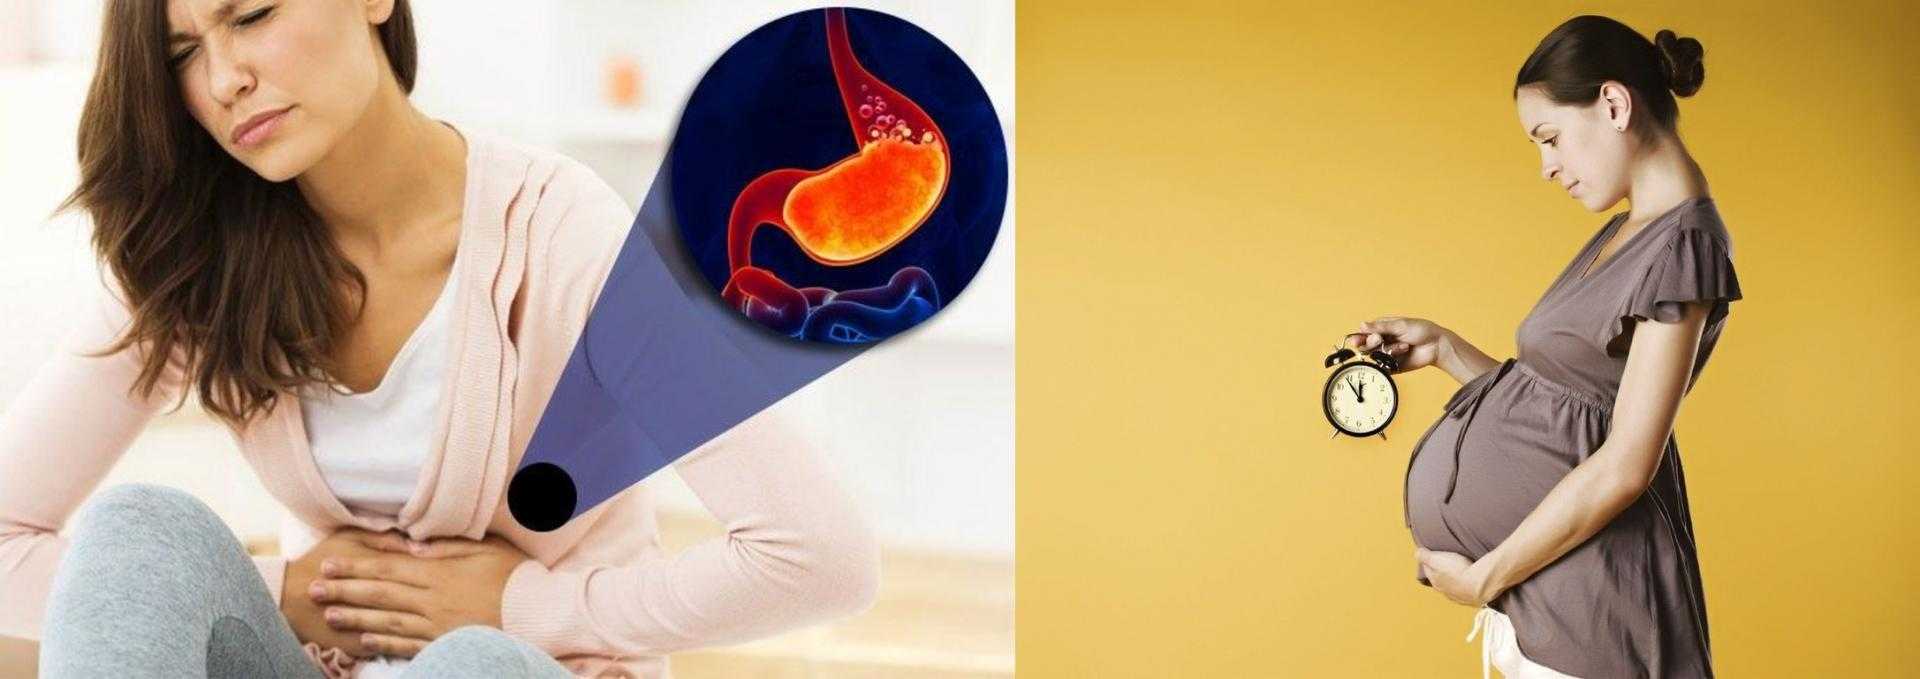 Как избавиться от изжоги при беременности: народные средства и диета при изжоге у беременных